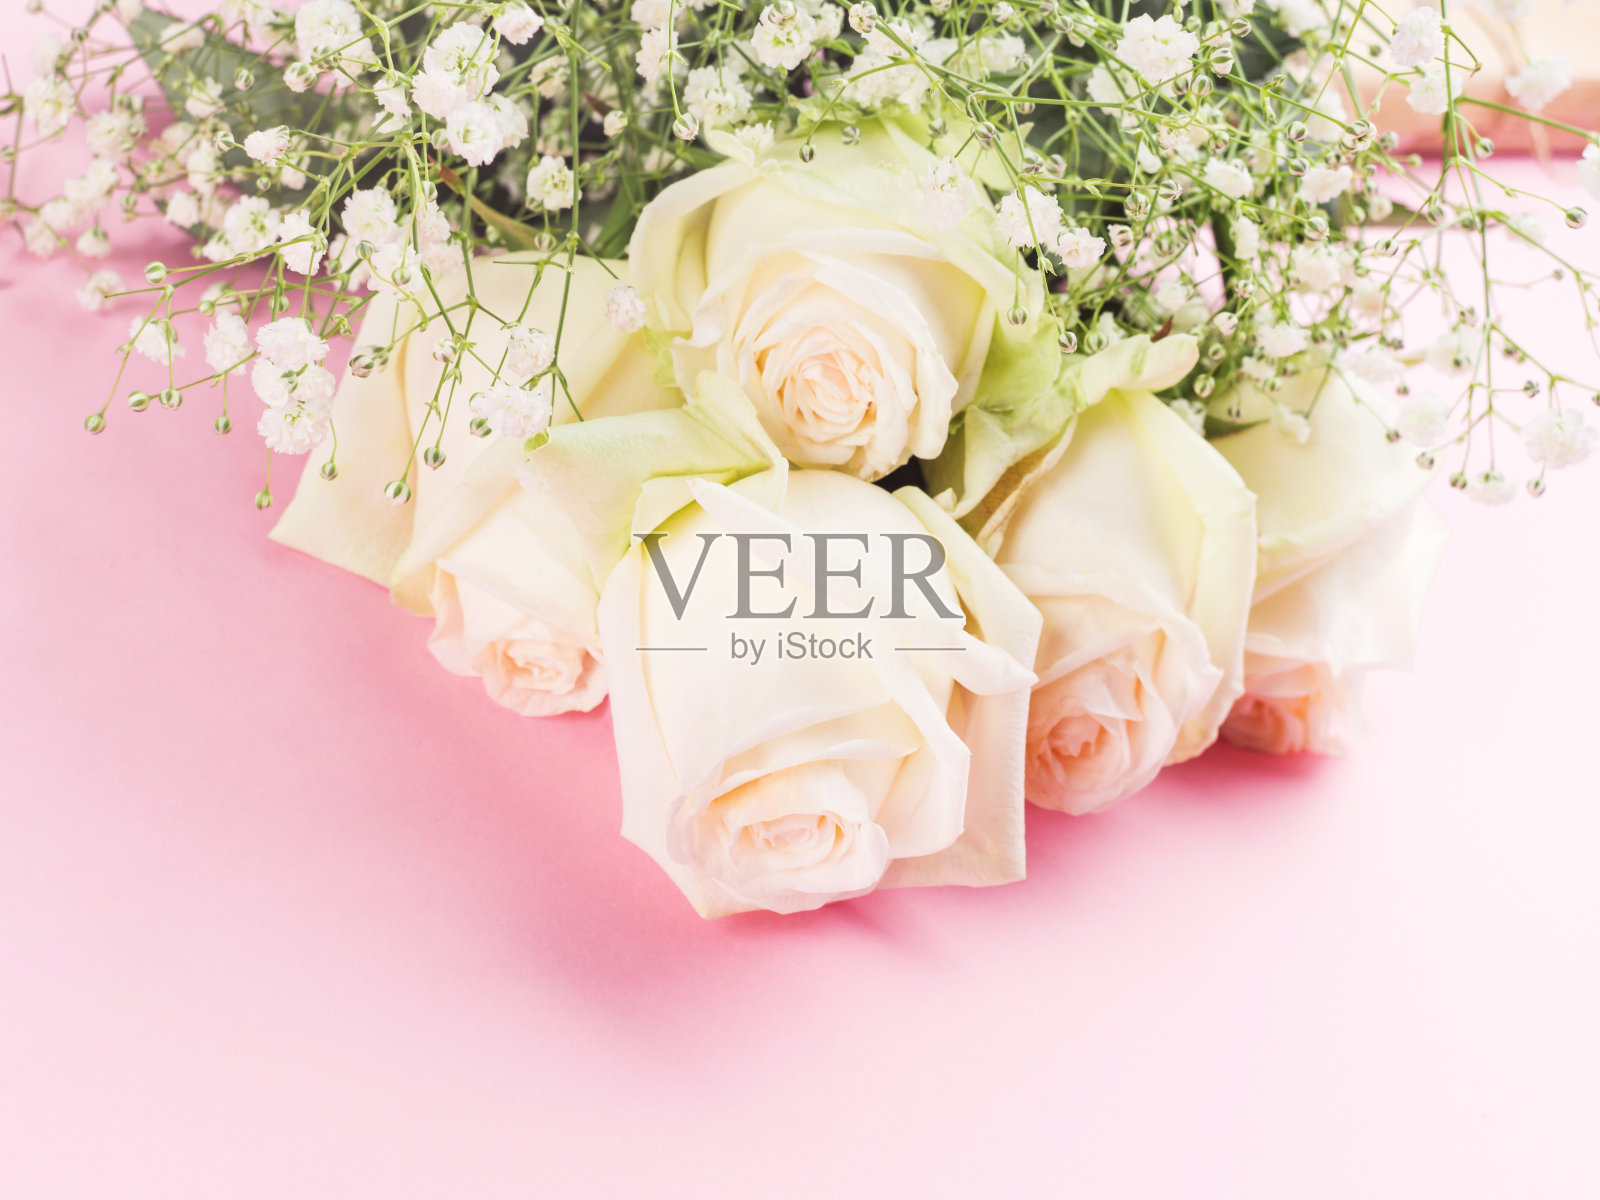 淡粉色背景上的白玫瑰花束照片摄影图片